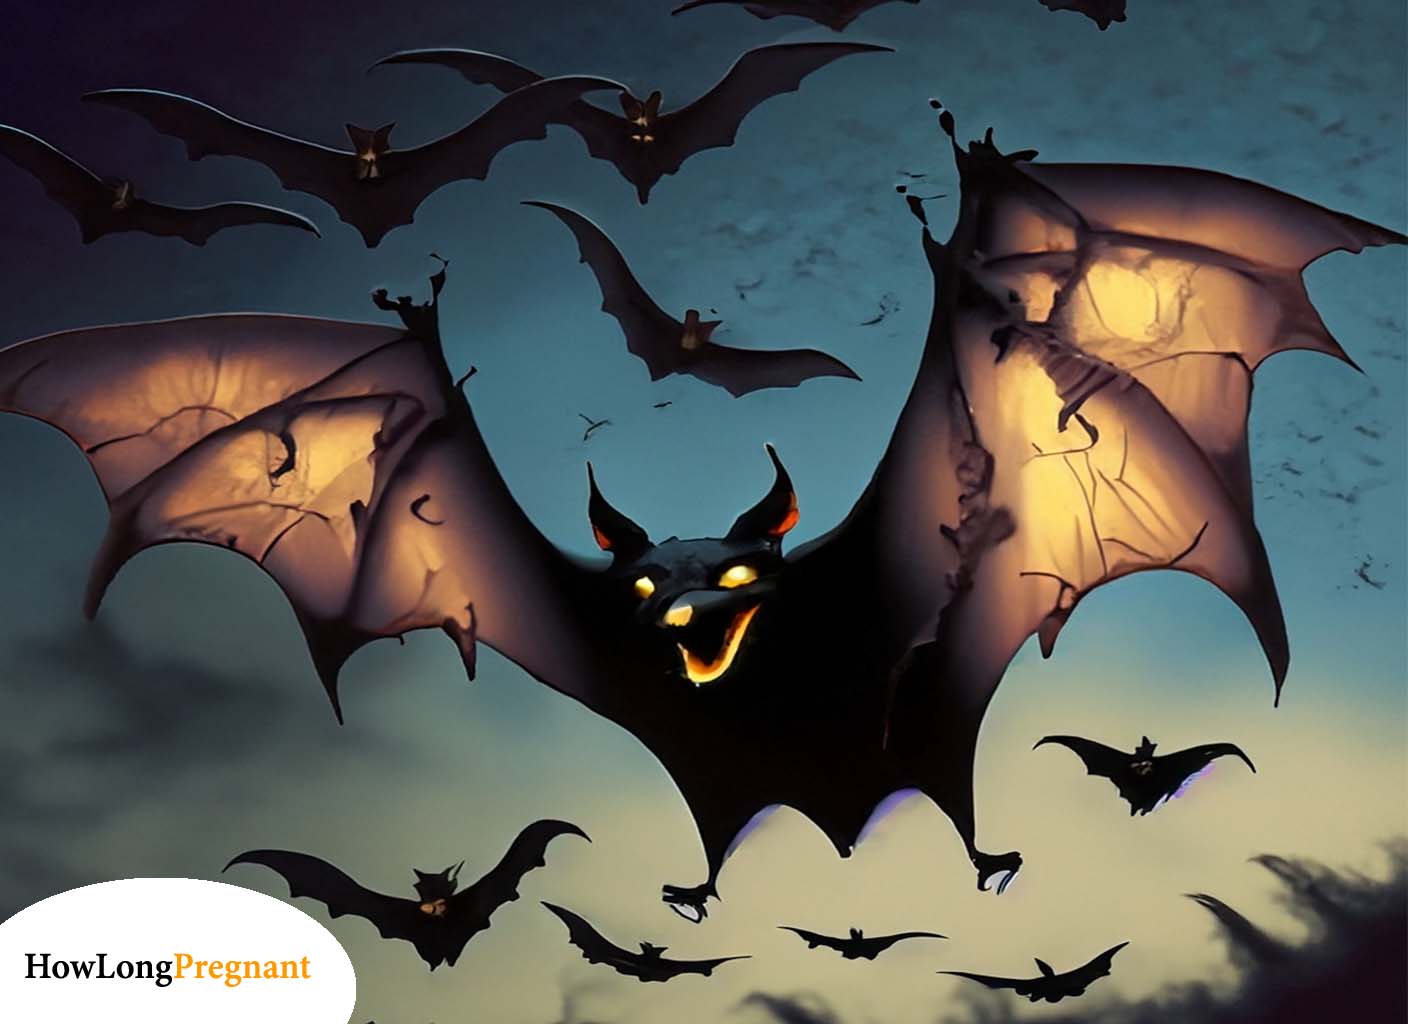 Bats in Flight - Illustration of bats flying in the night sky